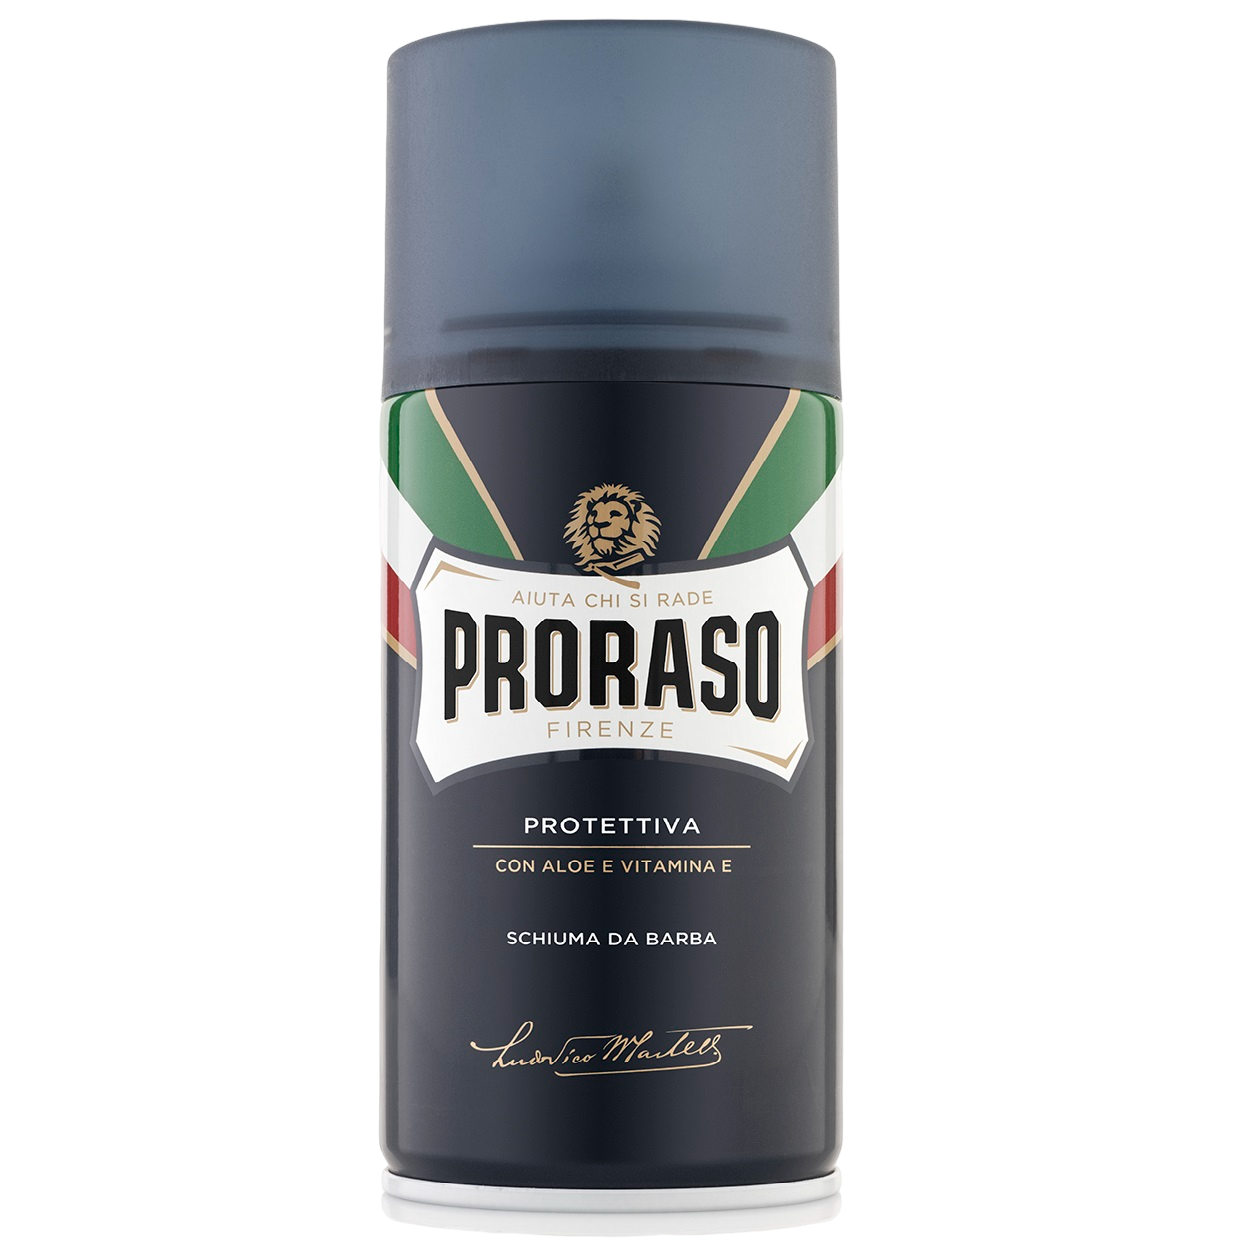 Пена для бритья Proraso с экстрактом алоэ и витамином Е, 300 мл - фото 1